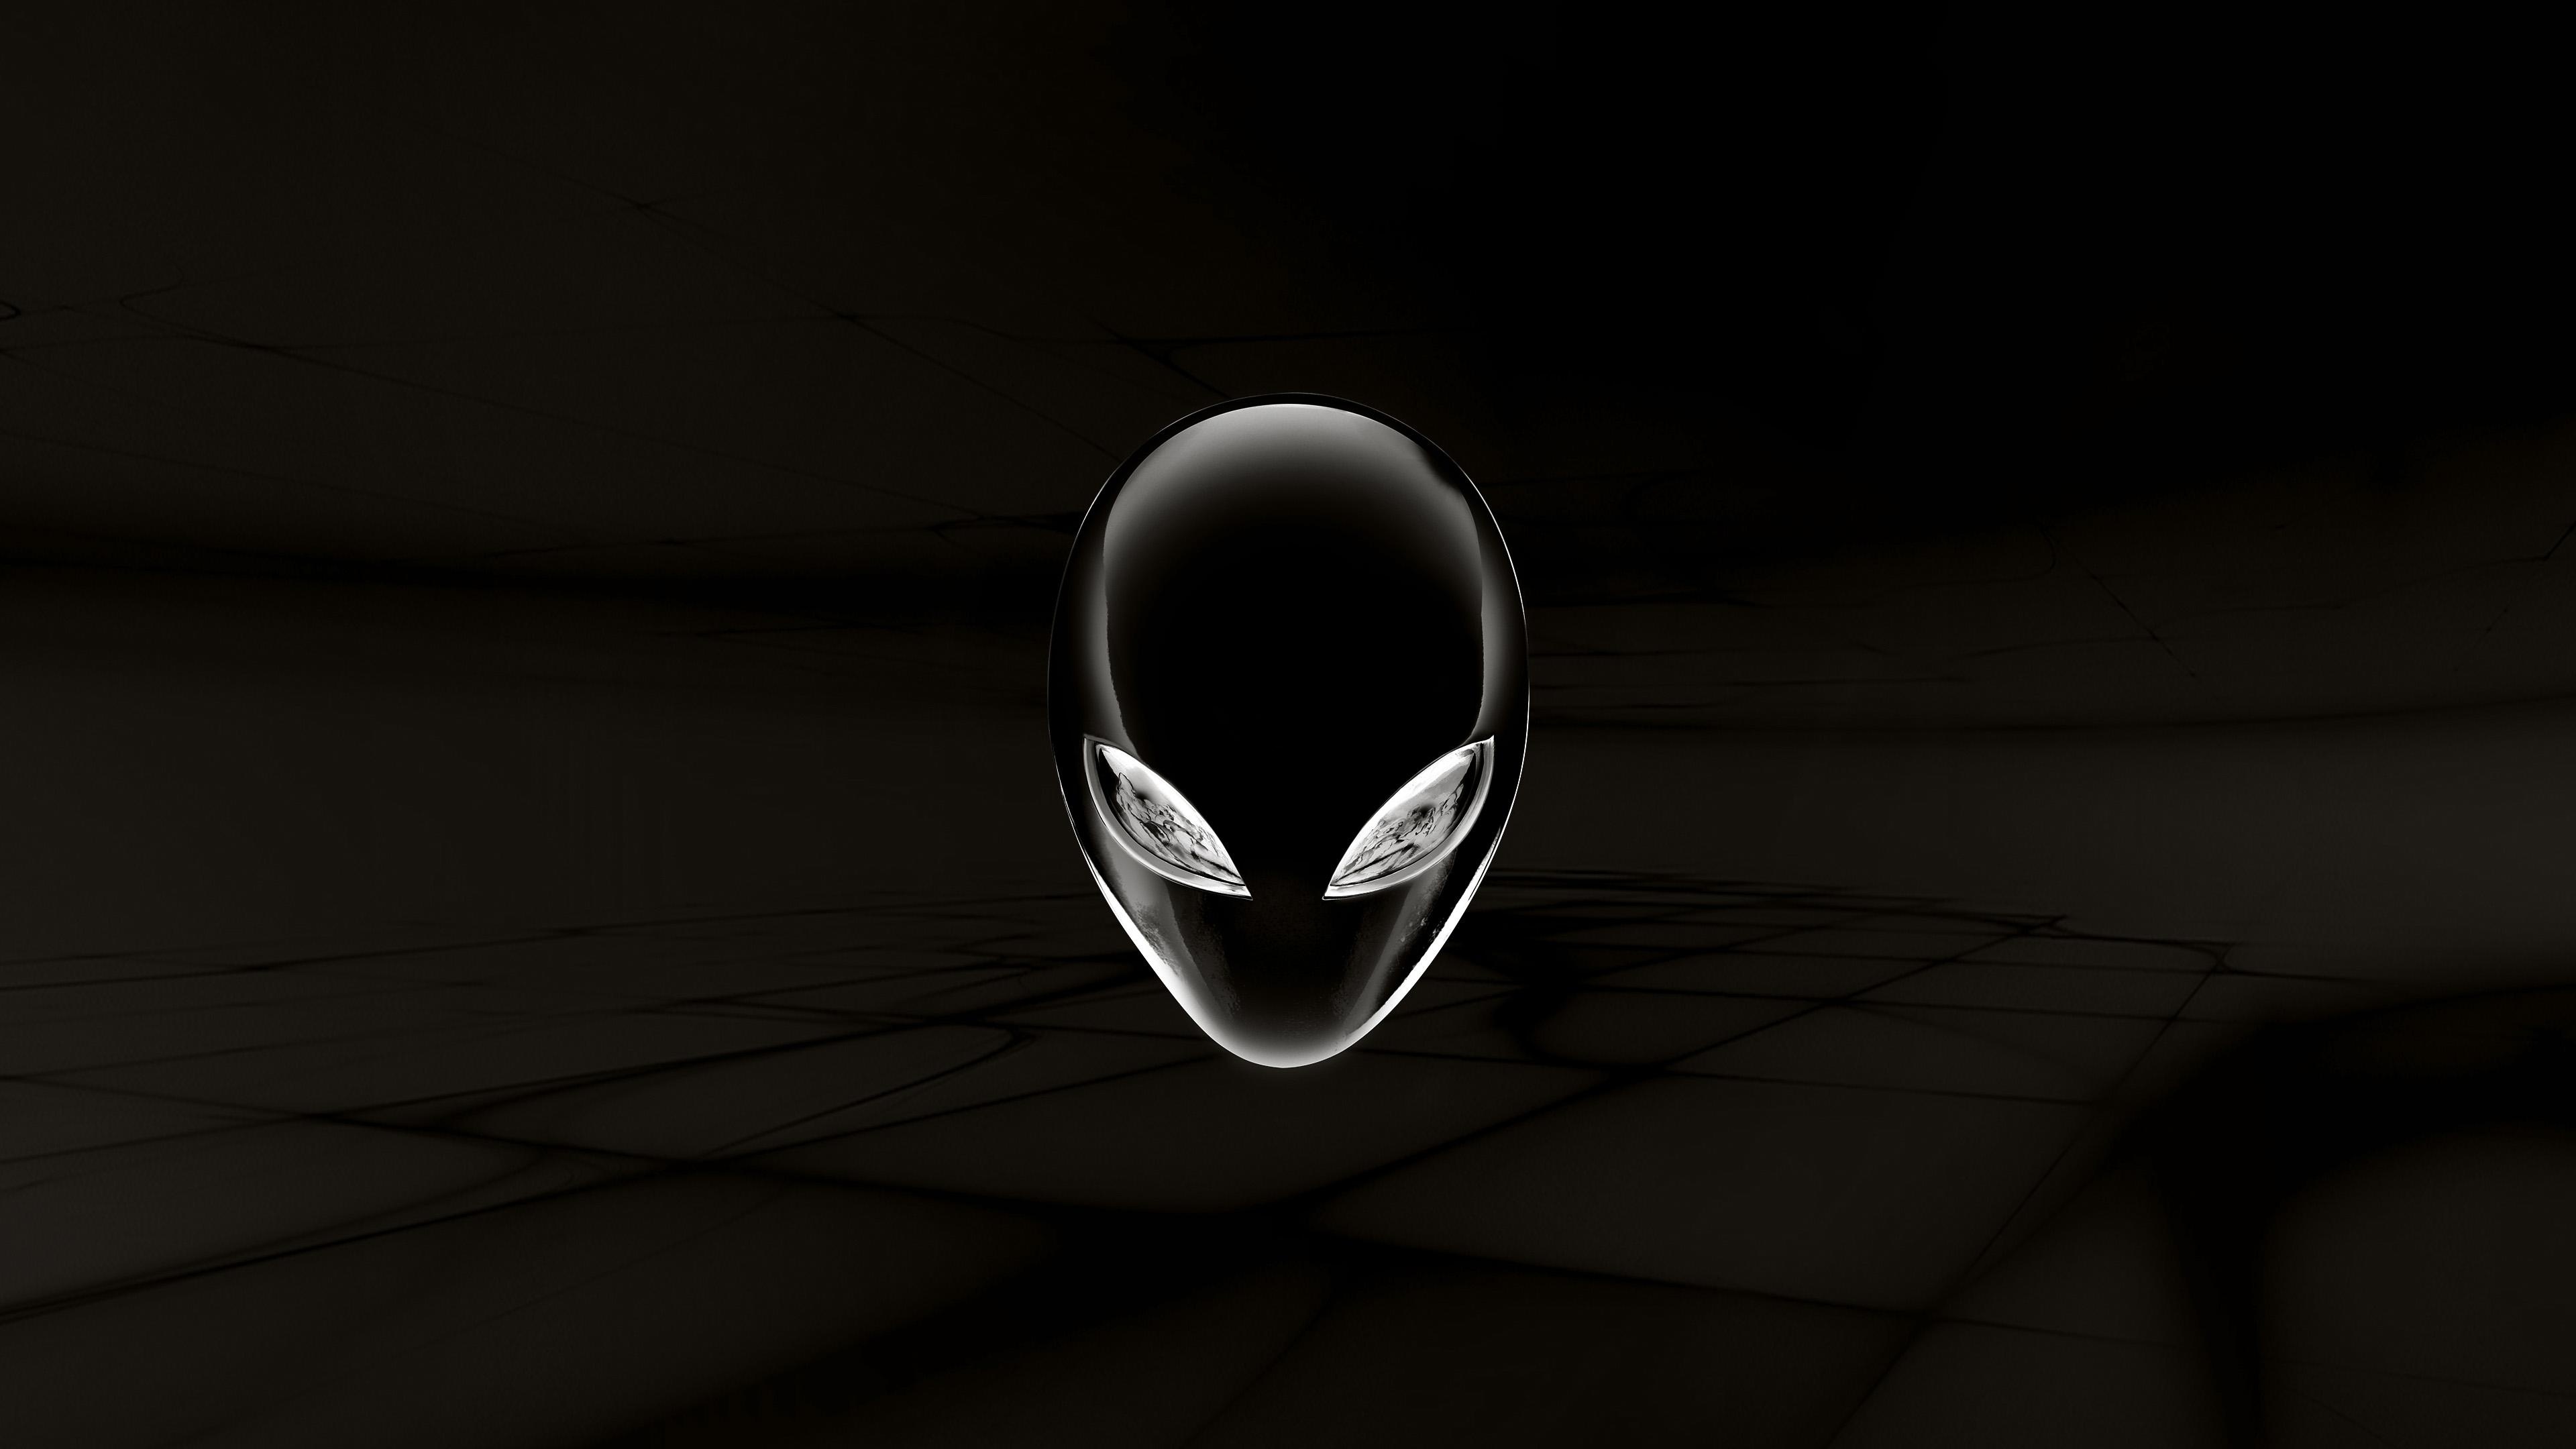 Alienware, Inverted desktop background, Unique style, High-tech mouse cursor, 3840x2160 4K Desktop